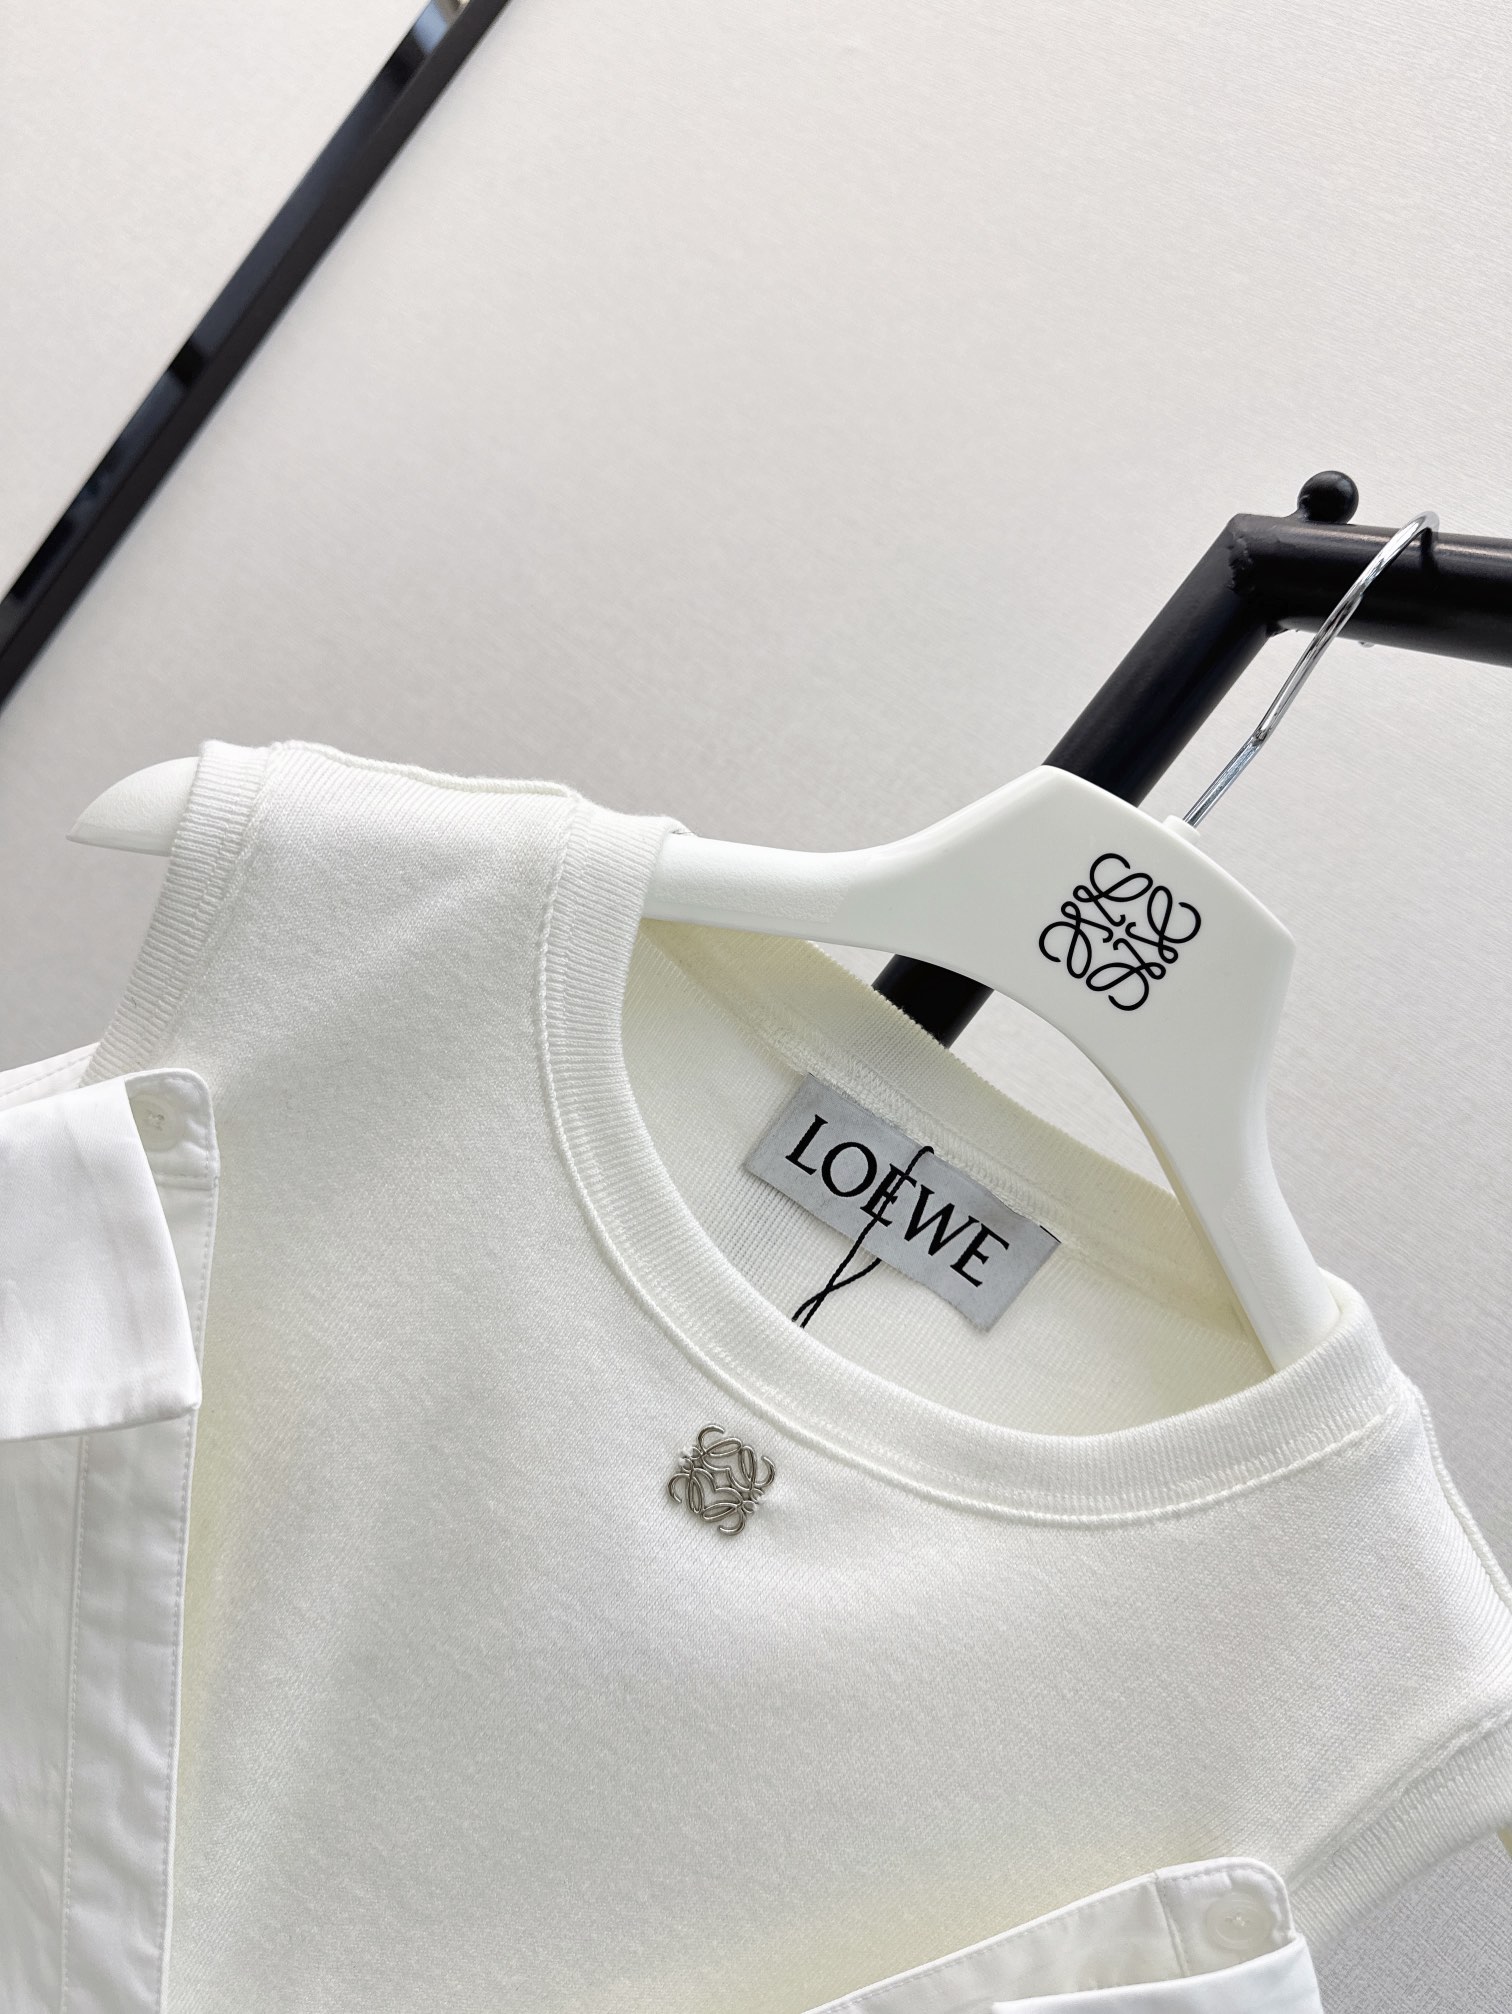 时髦单品Loe24Ss春夏最新款时髦精必入假两件短款衬衫内搭罗纹针织小背心+进口洗水棉衬衫面料超赞上身时